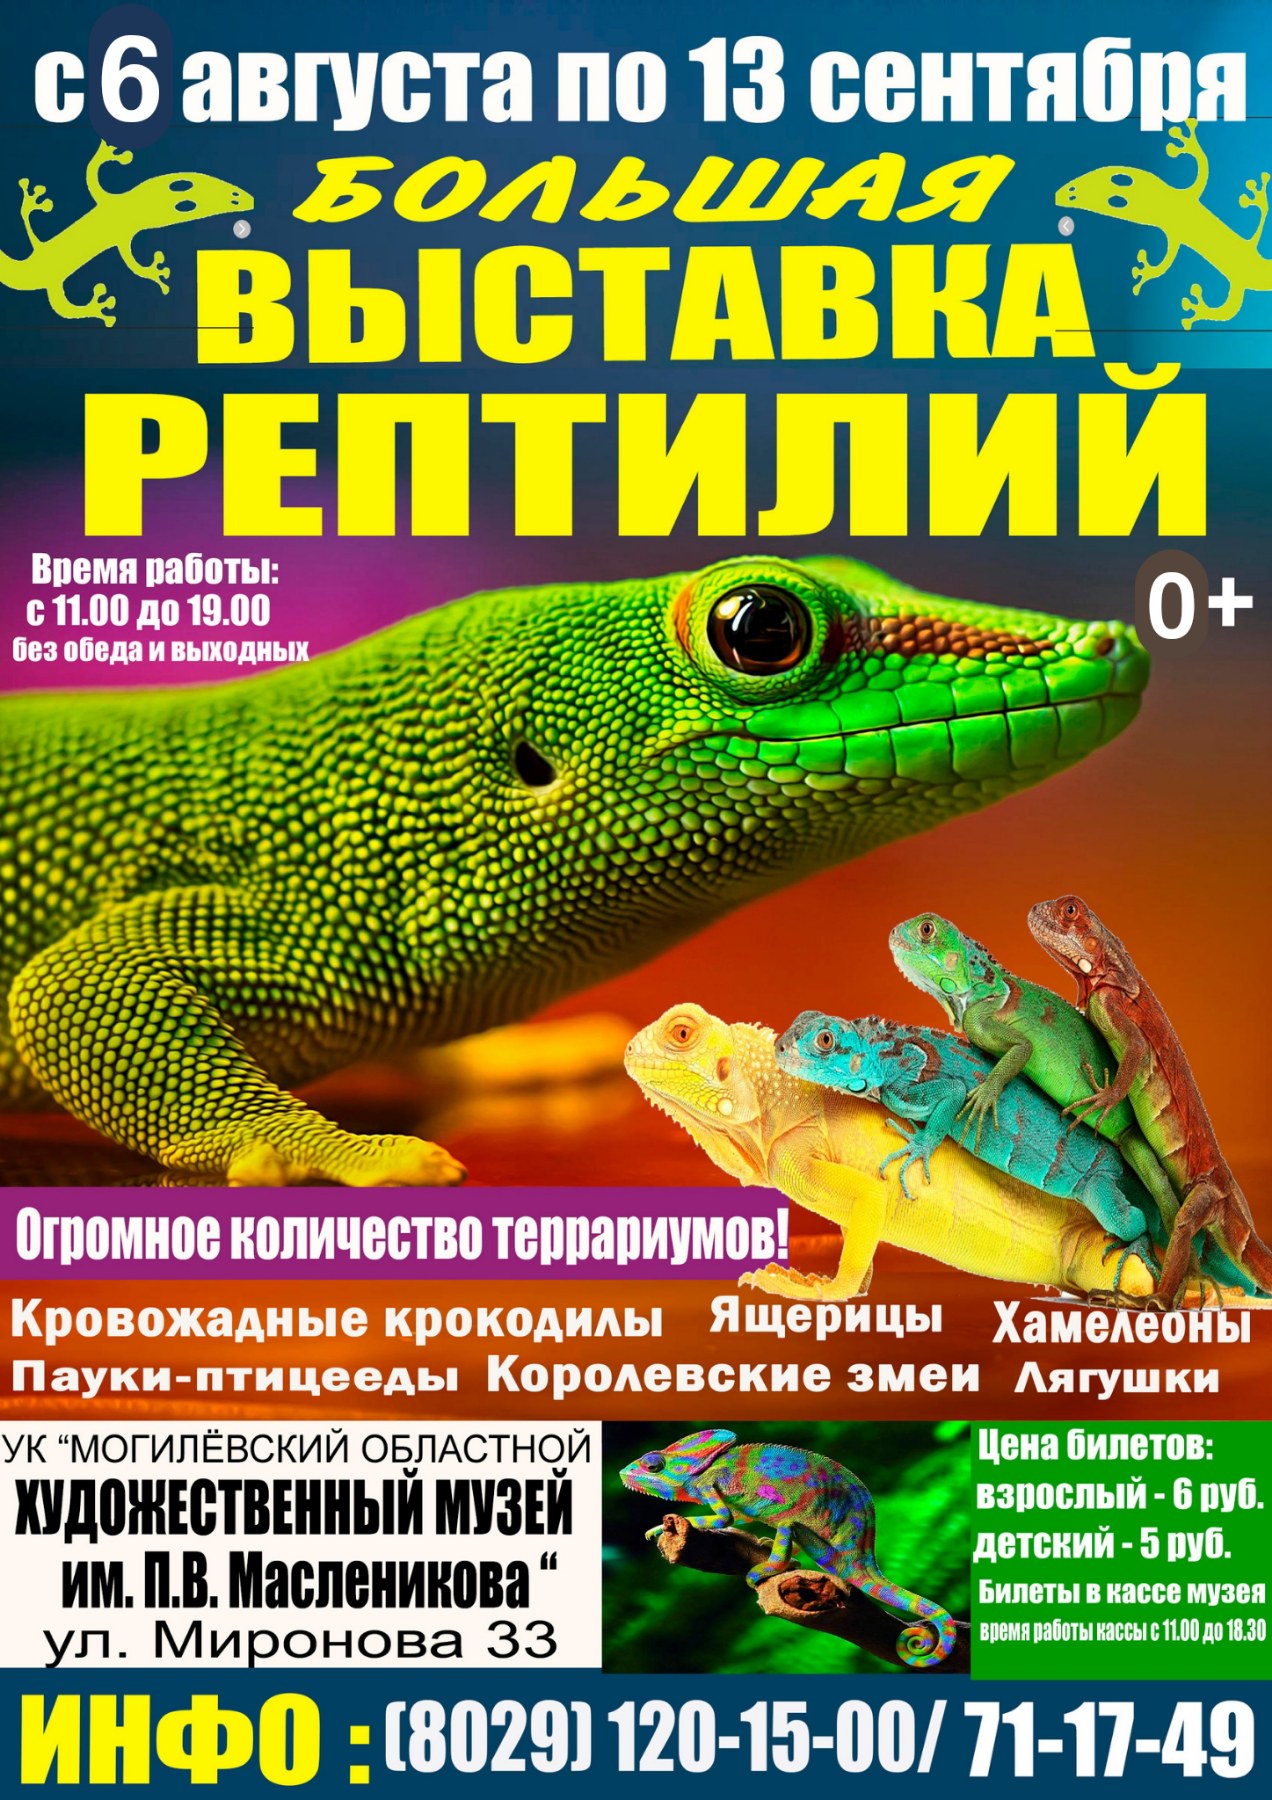 Большая выставка рептилий откроется в Могилеве 4 августа